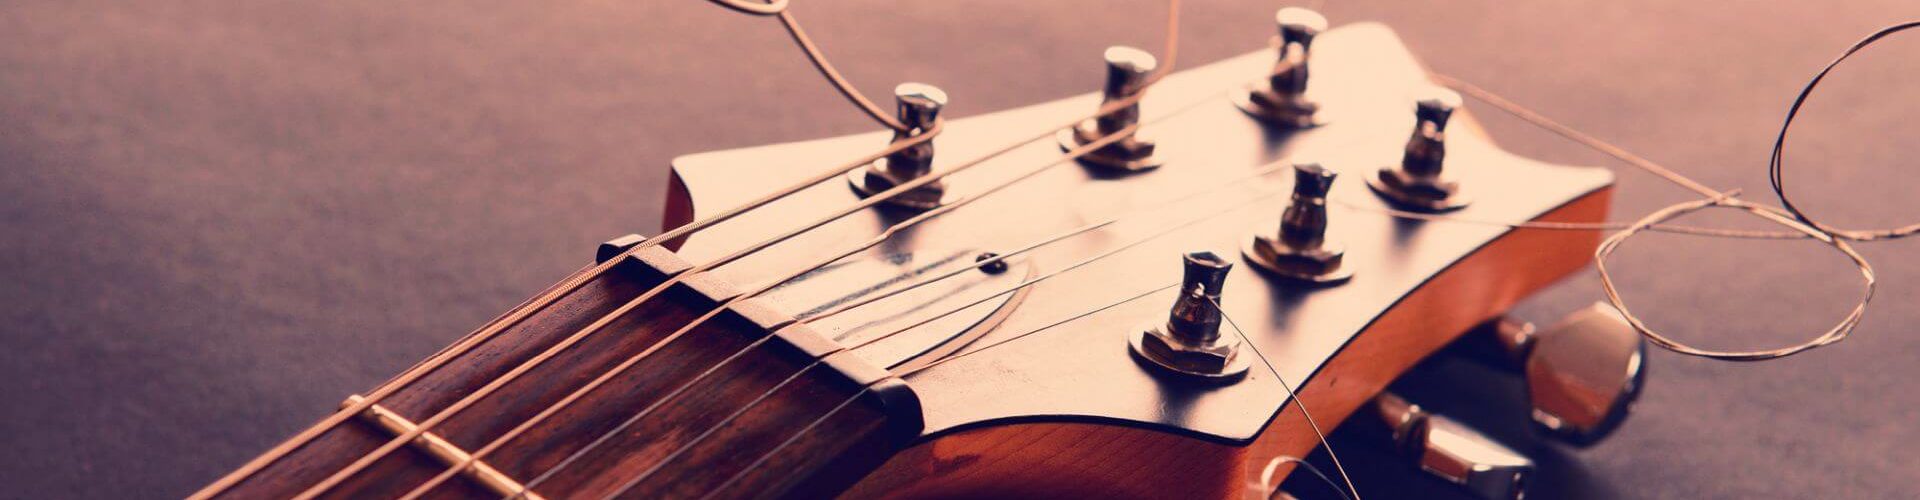 Career strings in versch E-Gitarrensaiten Stärken 